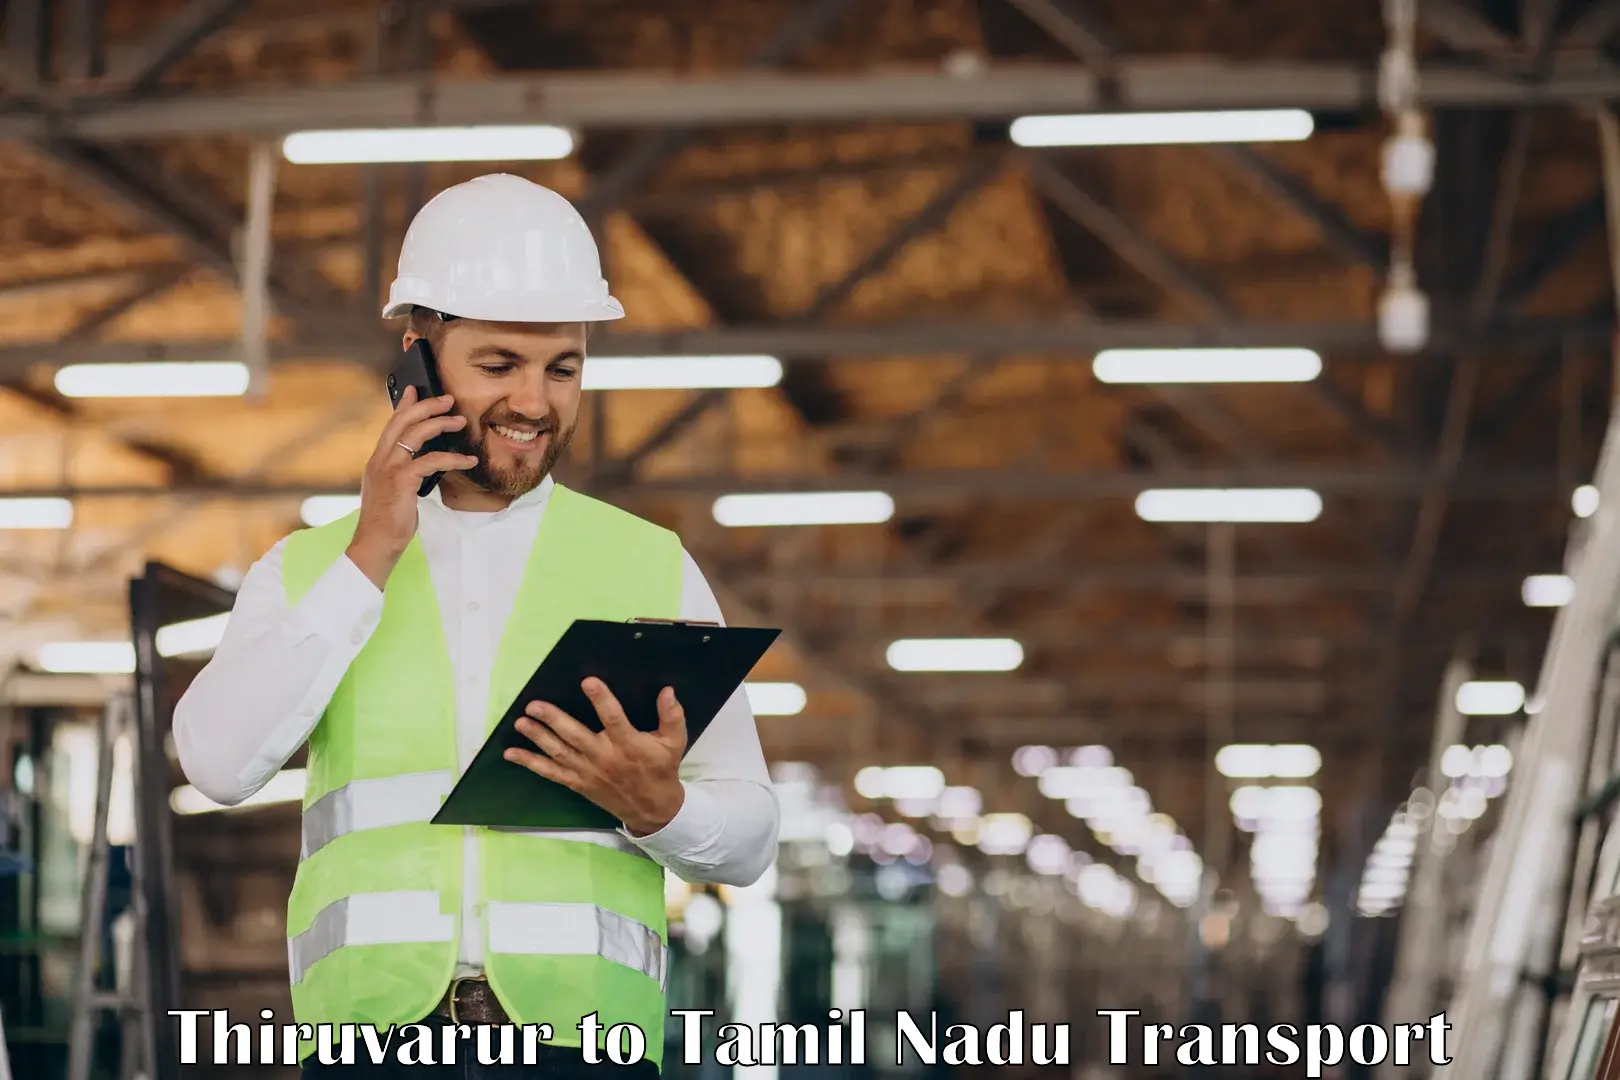 Part load transport service in India Thiruvarur to Tiruvannamalai